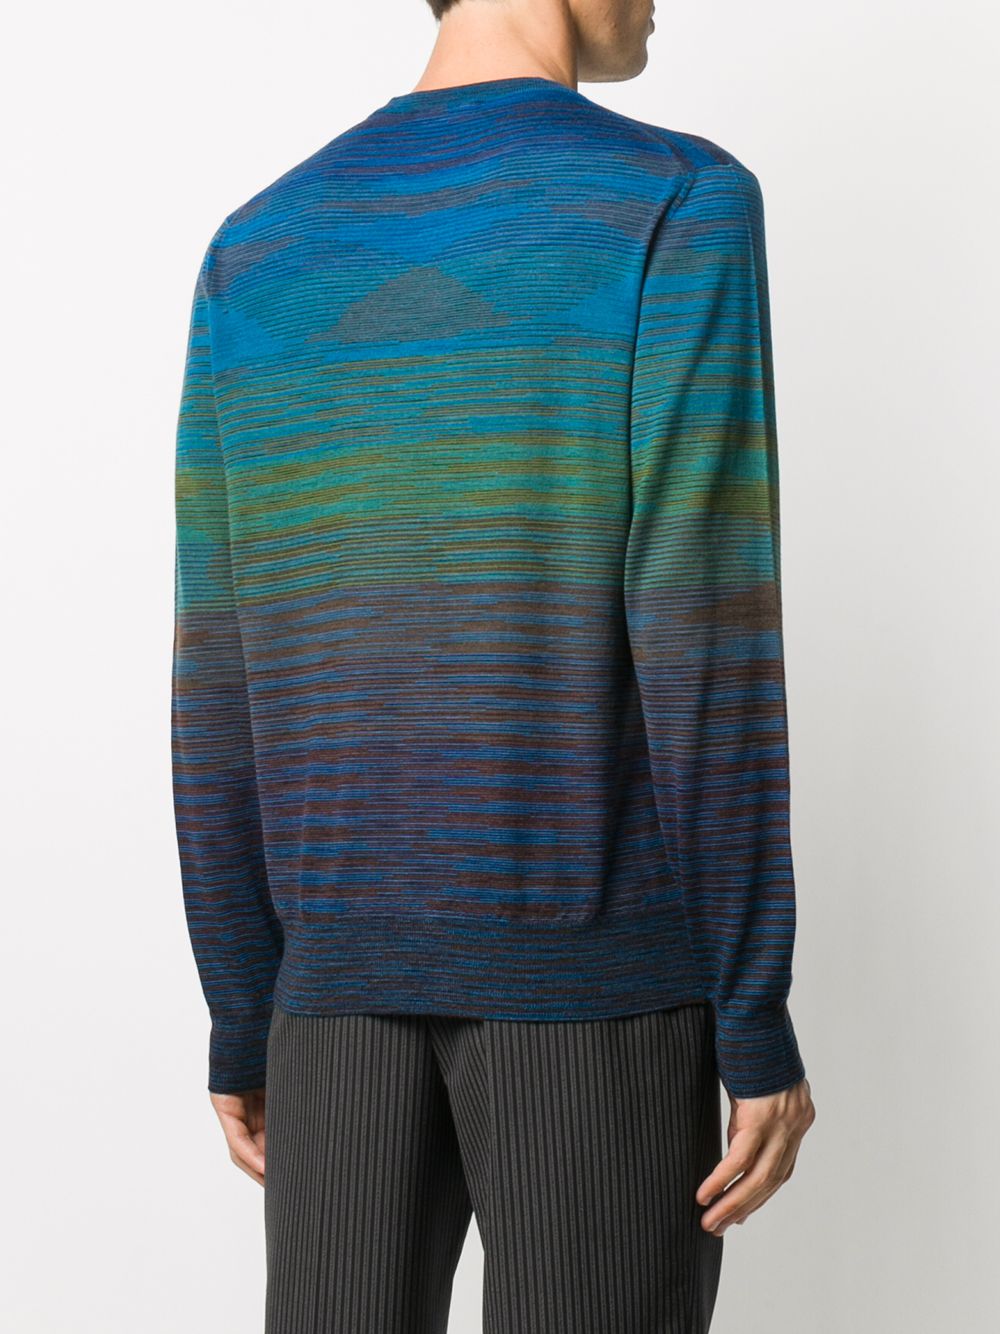 фото Missoni полосатый пуловер с круглым вырезом